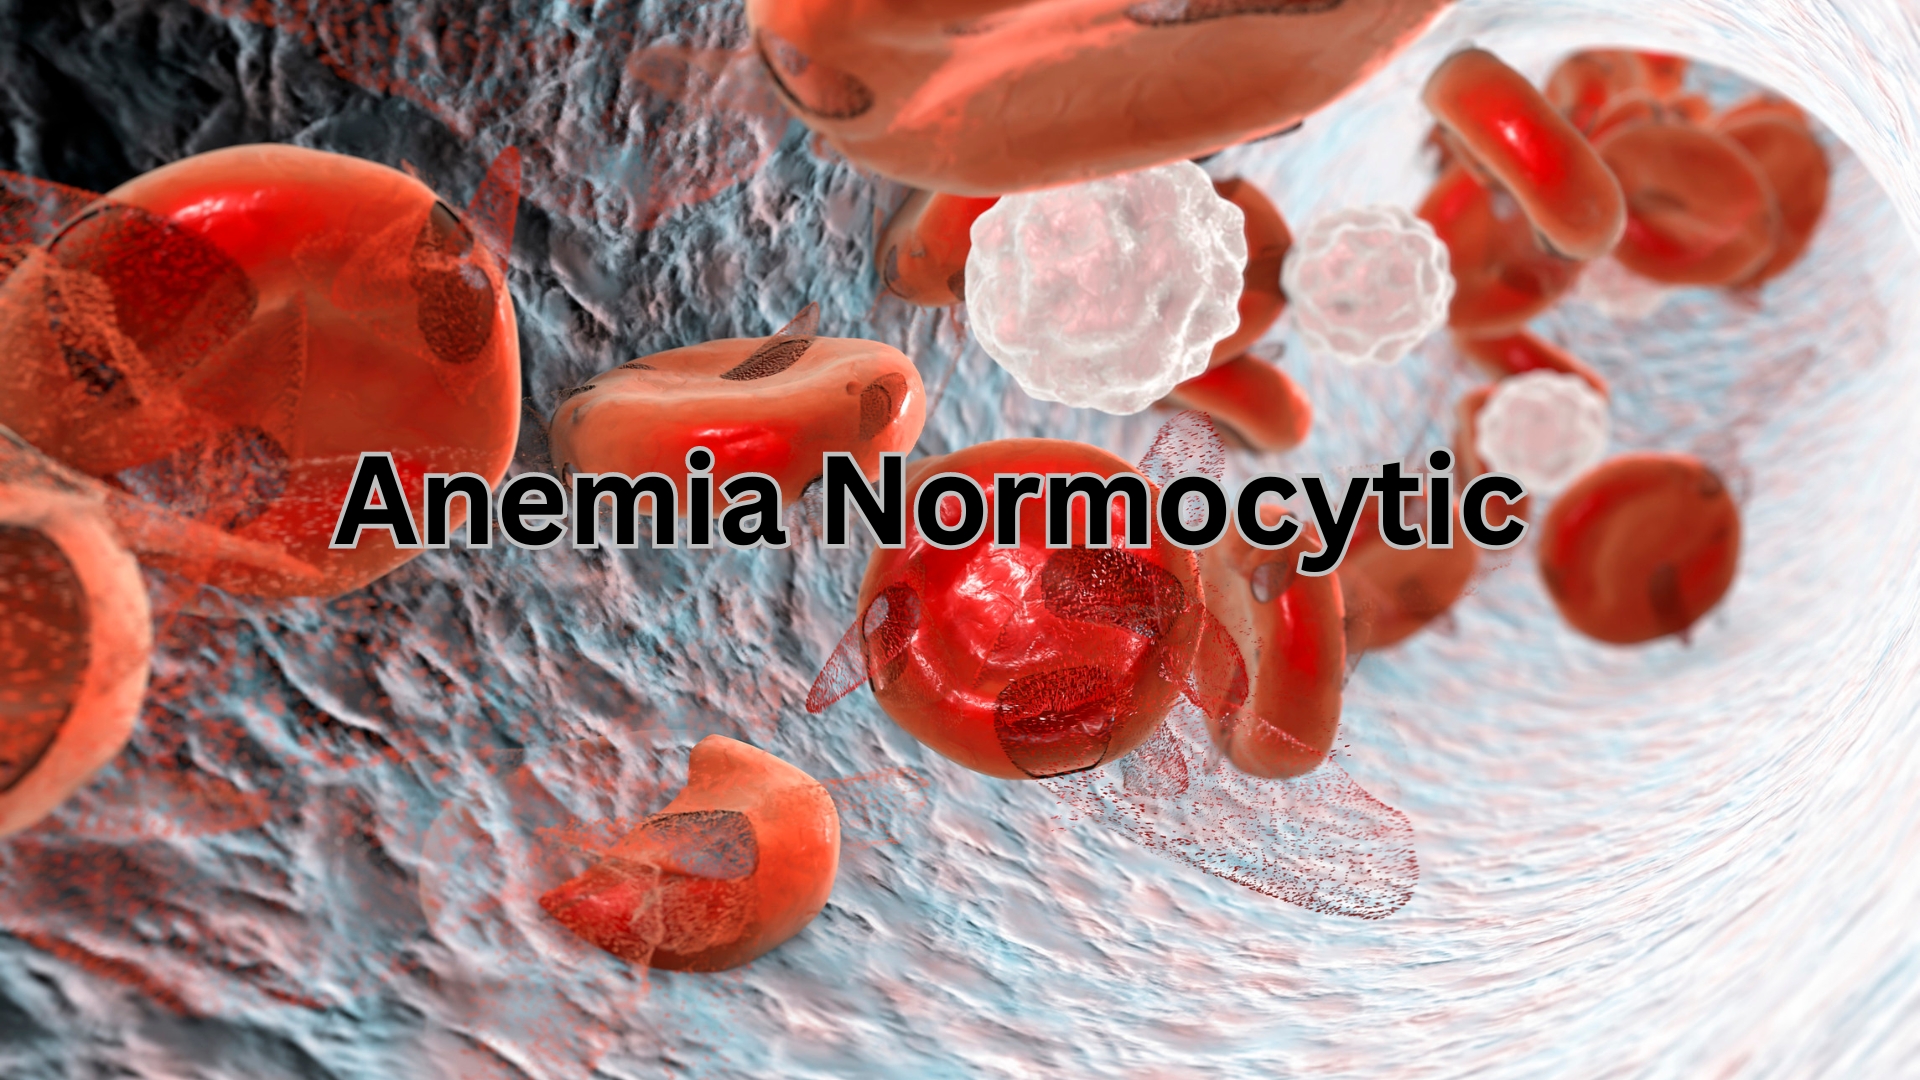 anemia normocytic